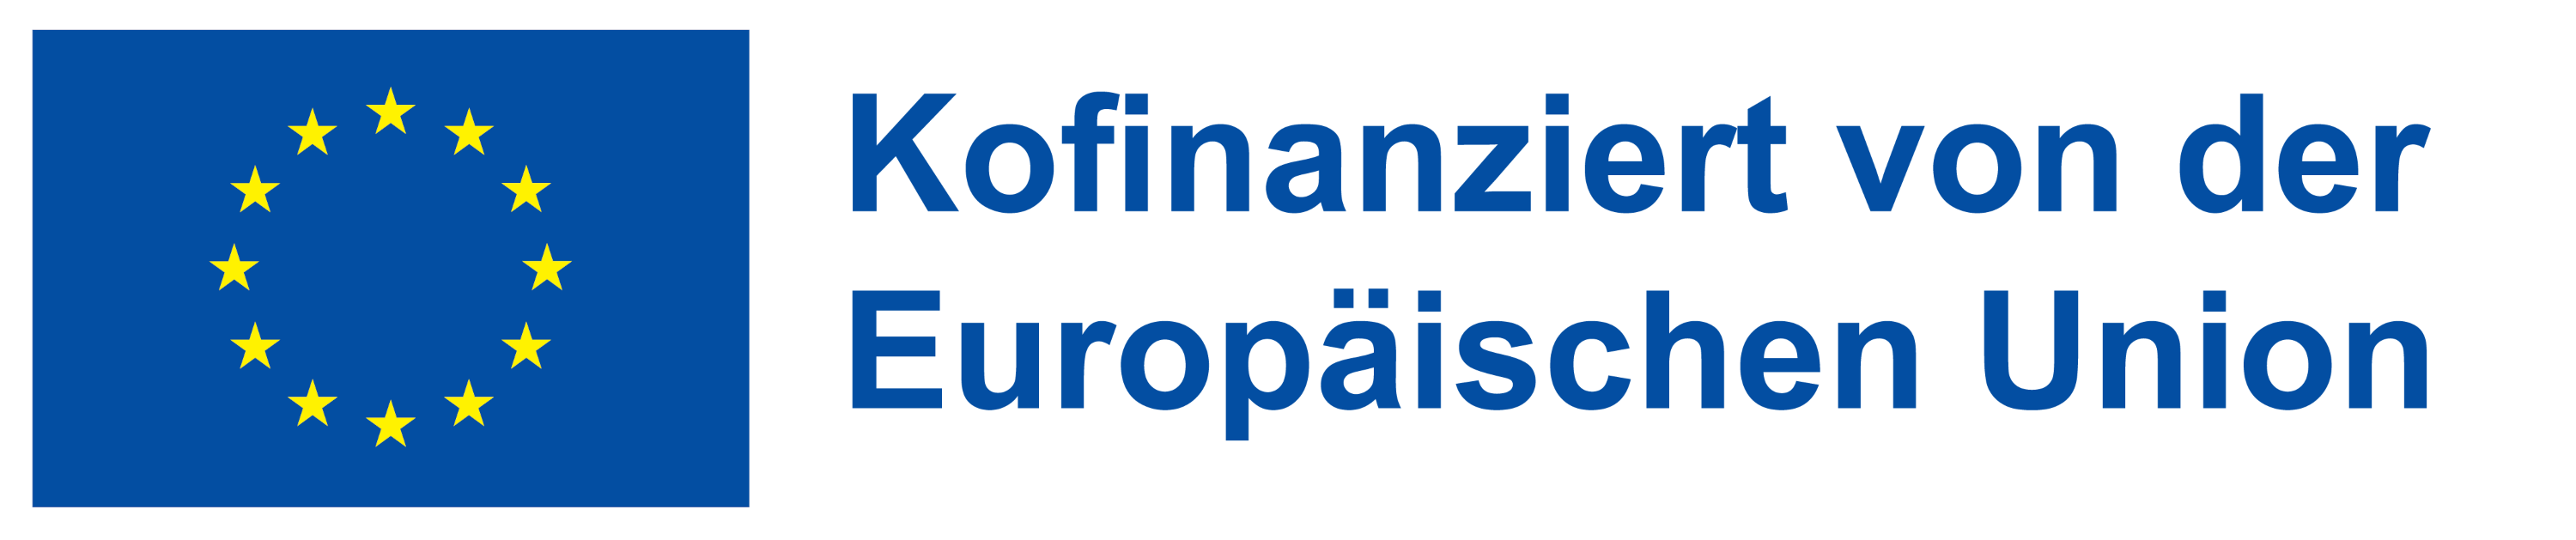 Europaflagge und Schriftzug "Kofinanzierut von der Europäischen Union"